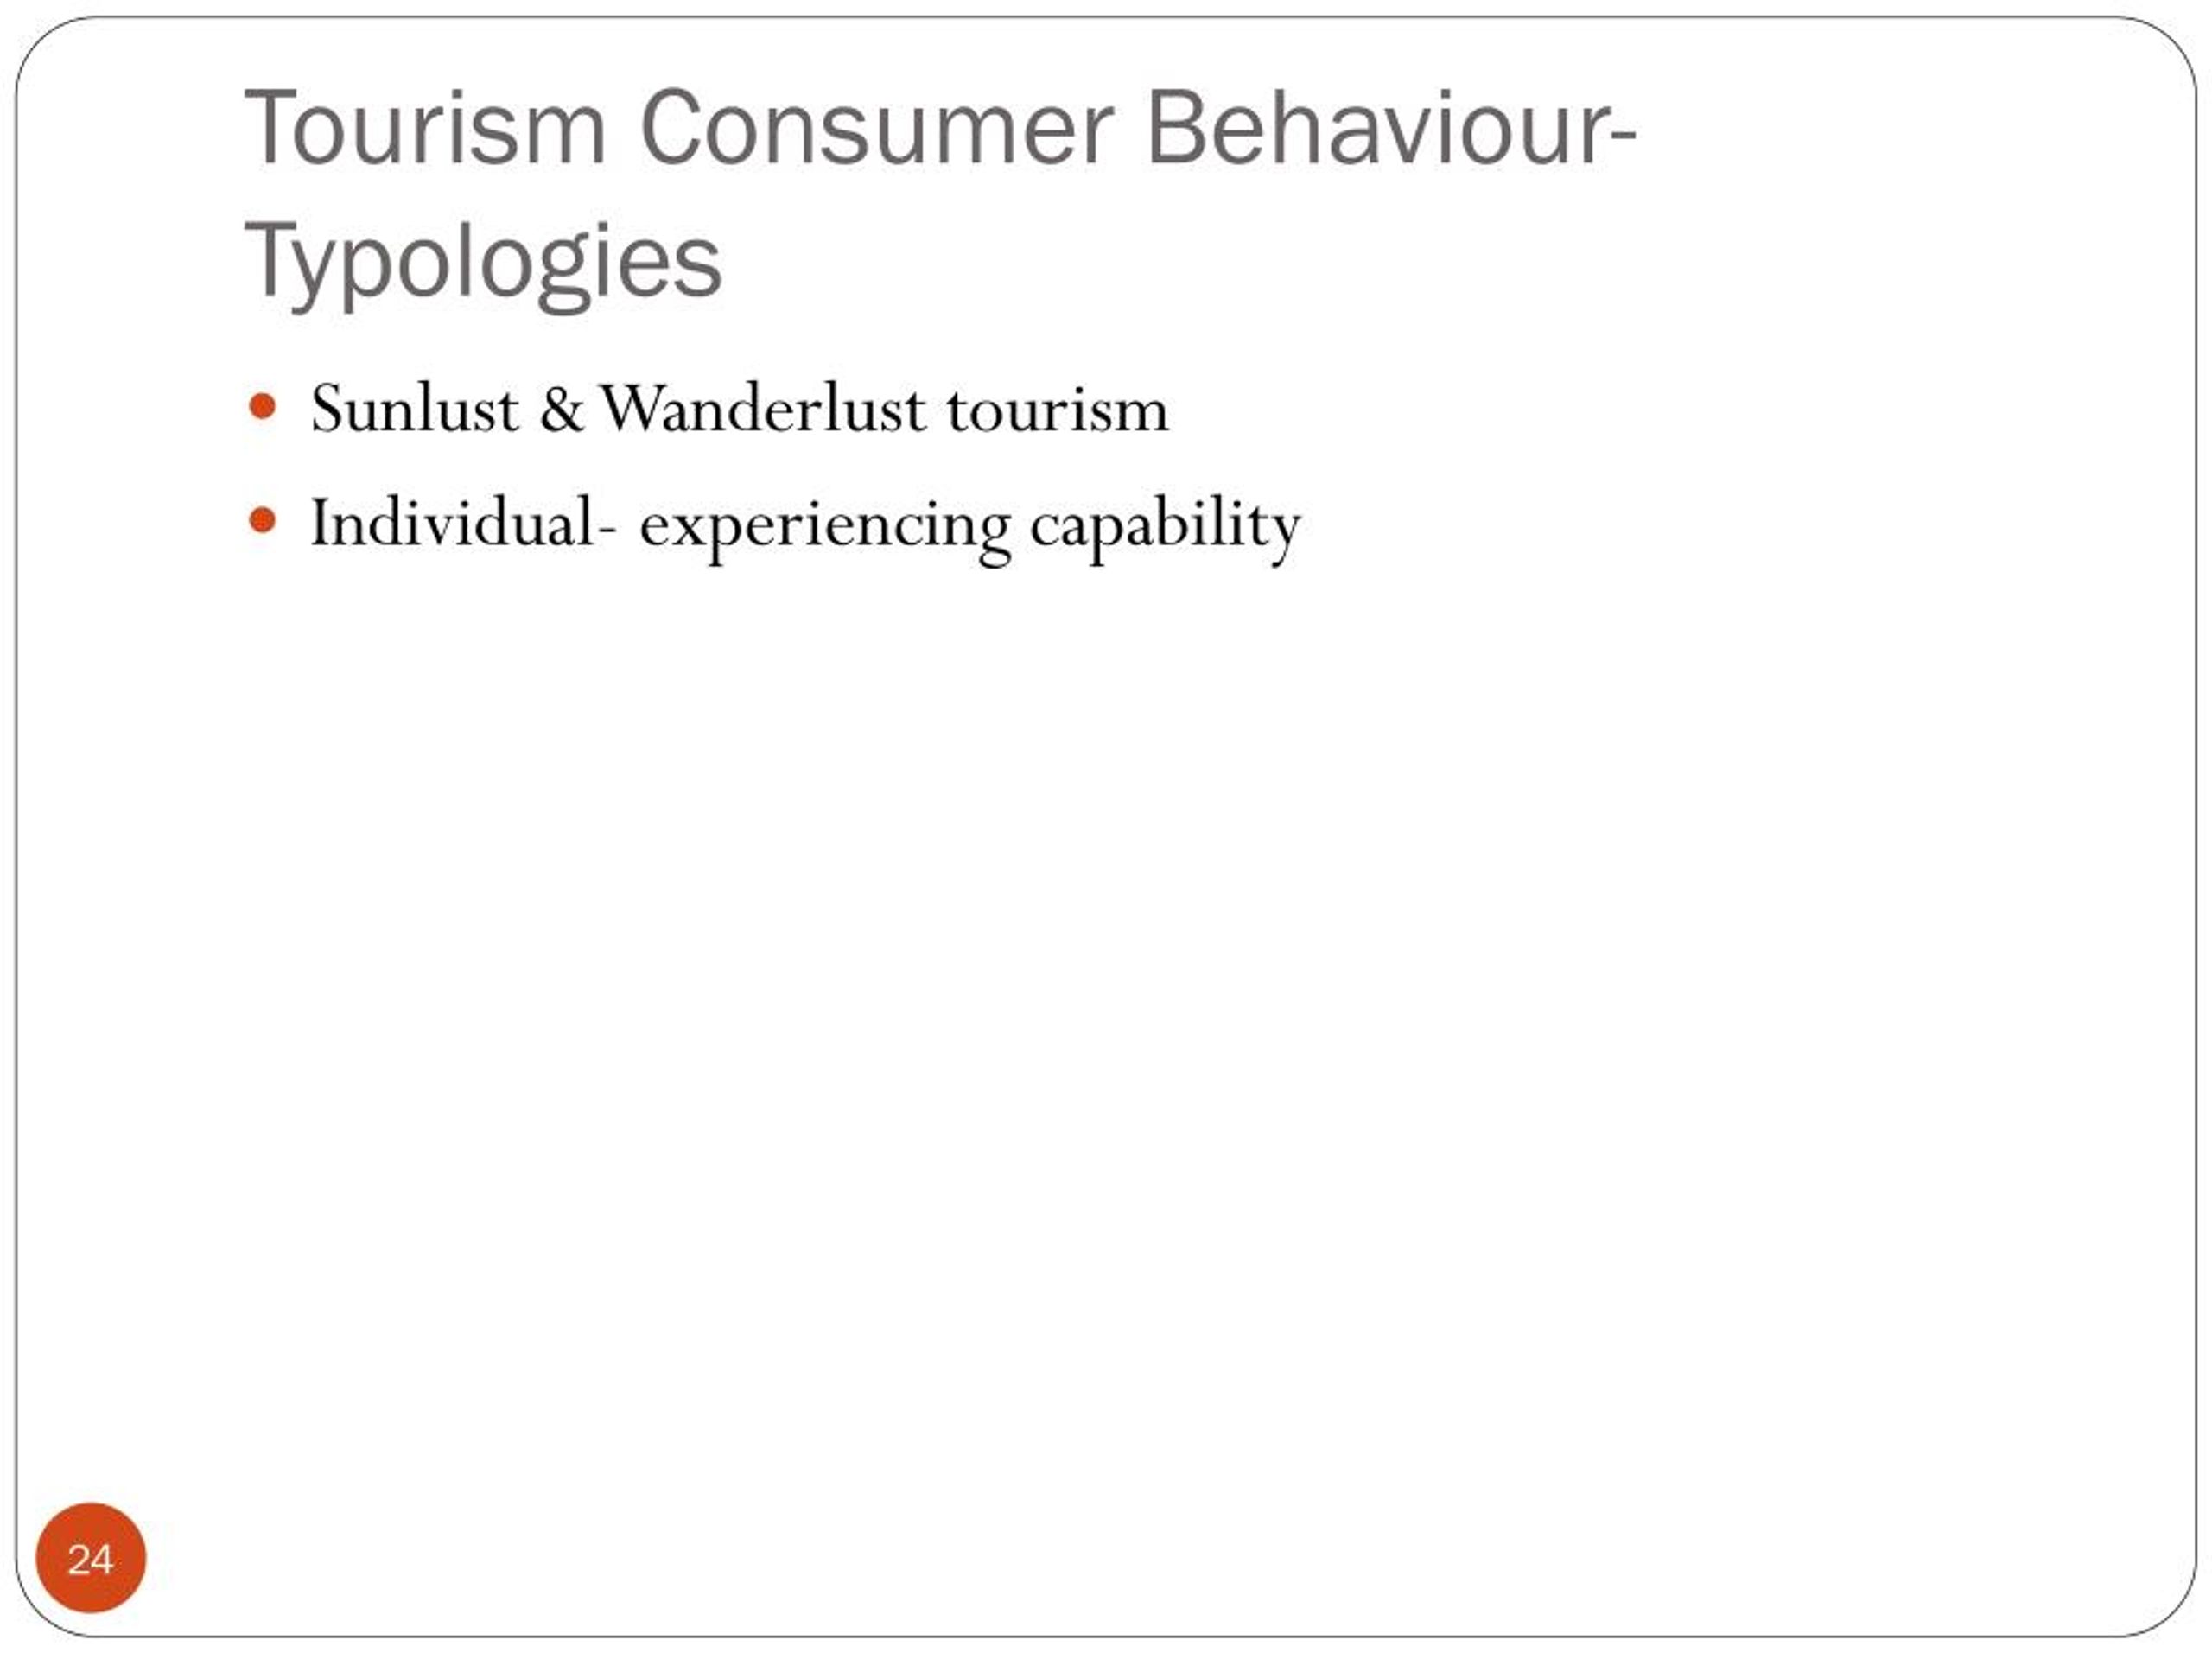 consumer behaviour in tourism essay